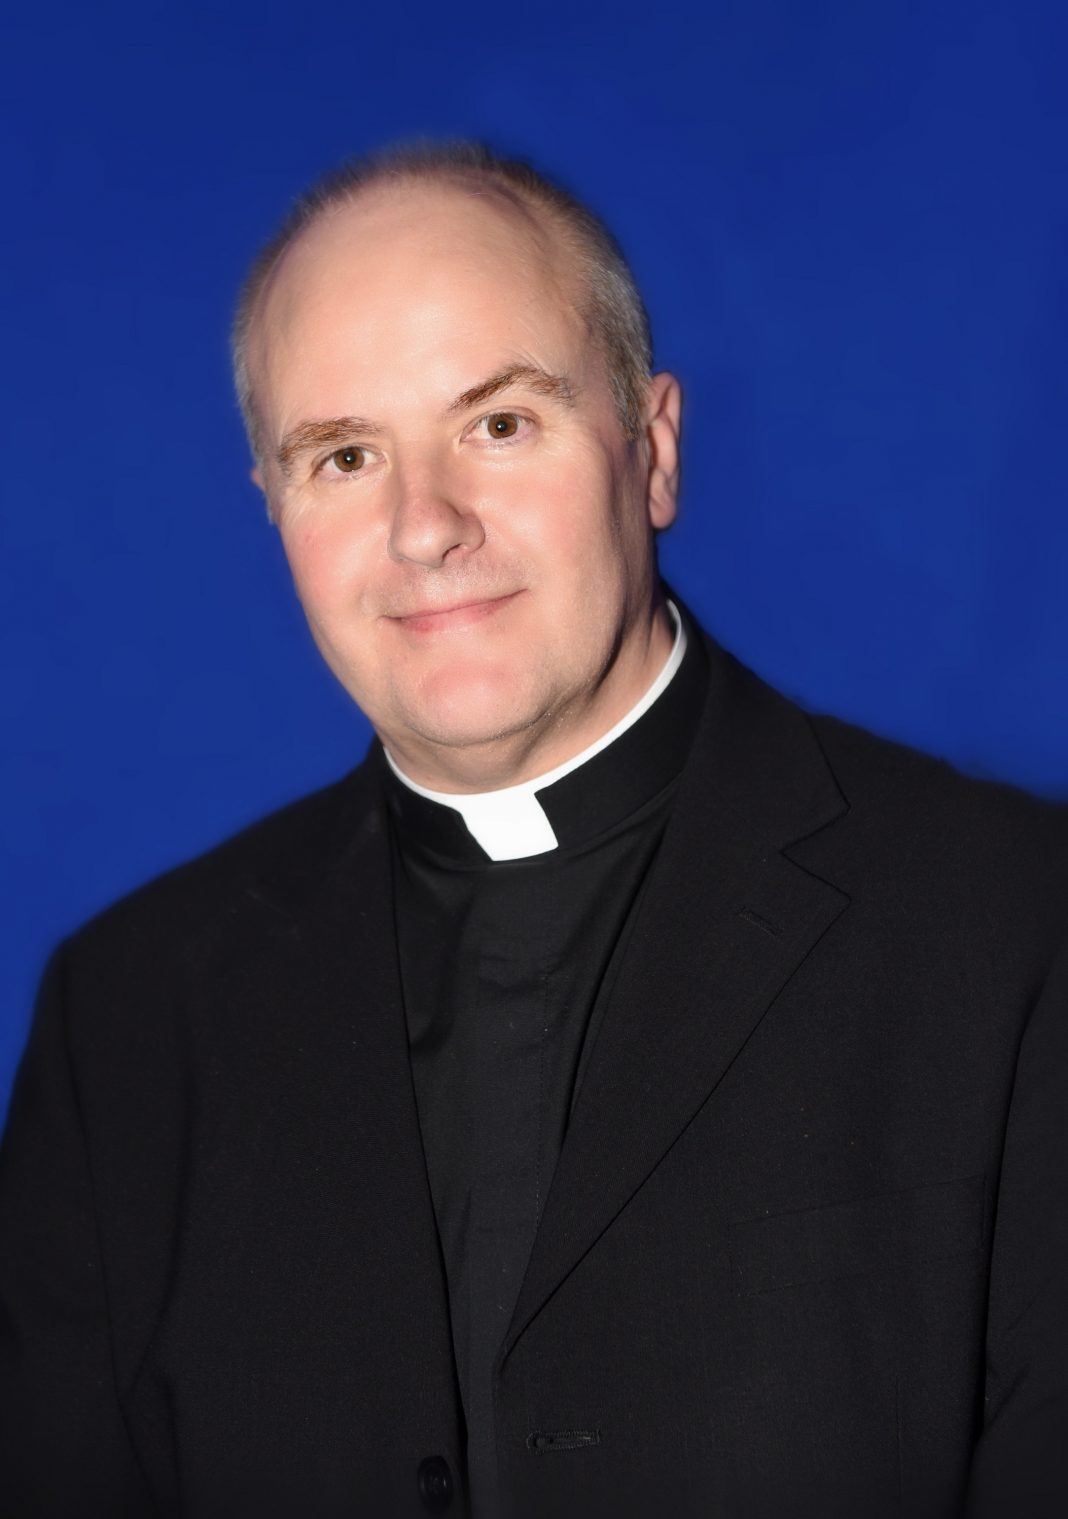 Father John Bagnall